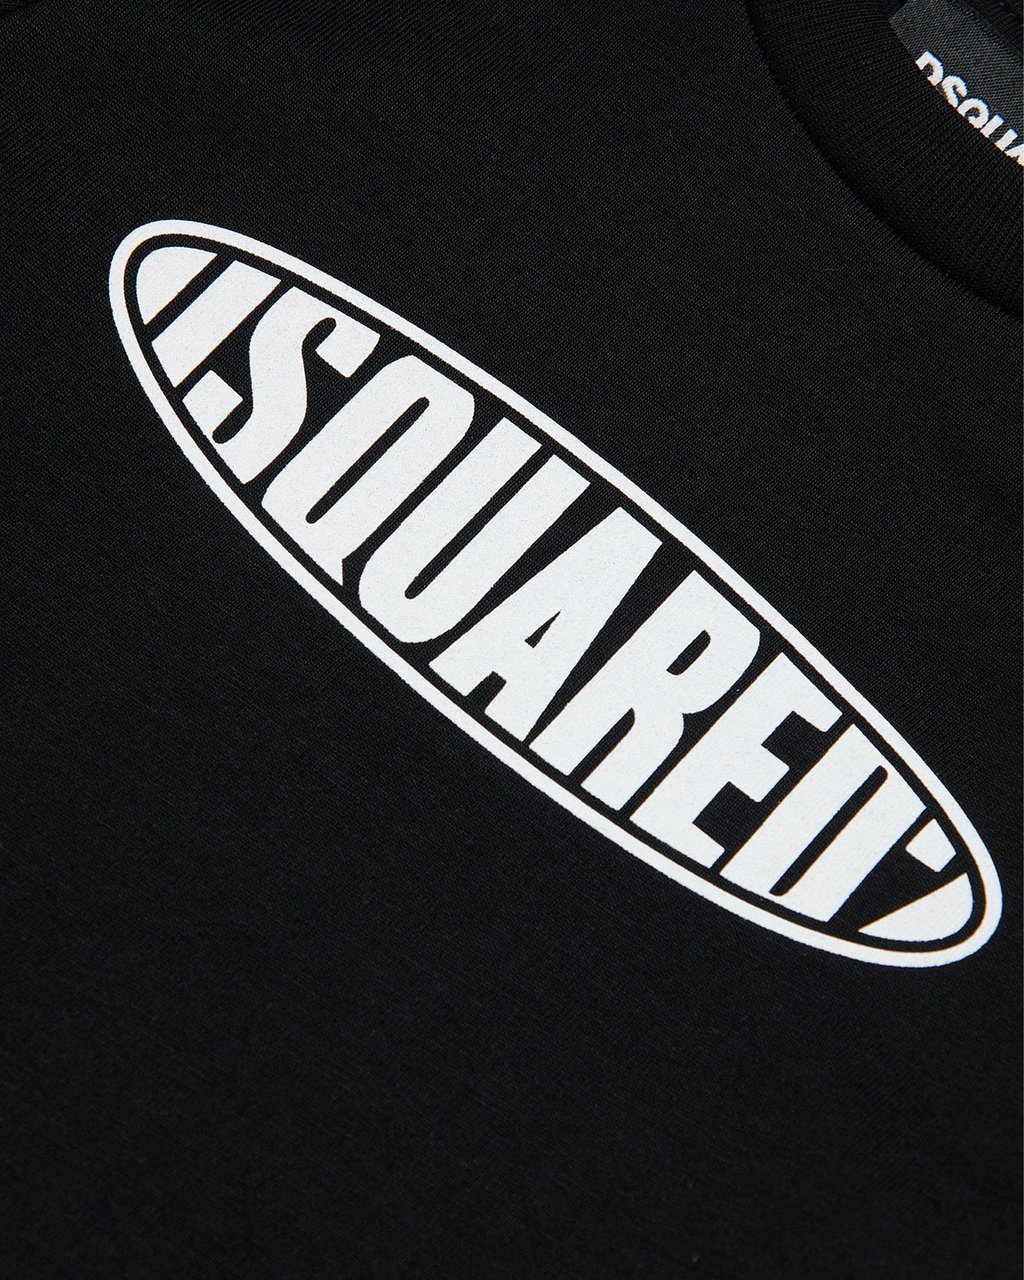 Dsquared2 Relax T-Shirt Zwart